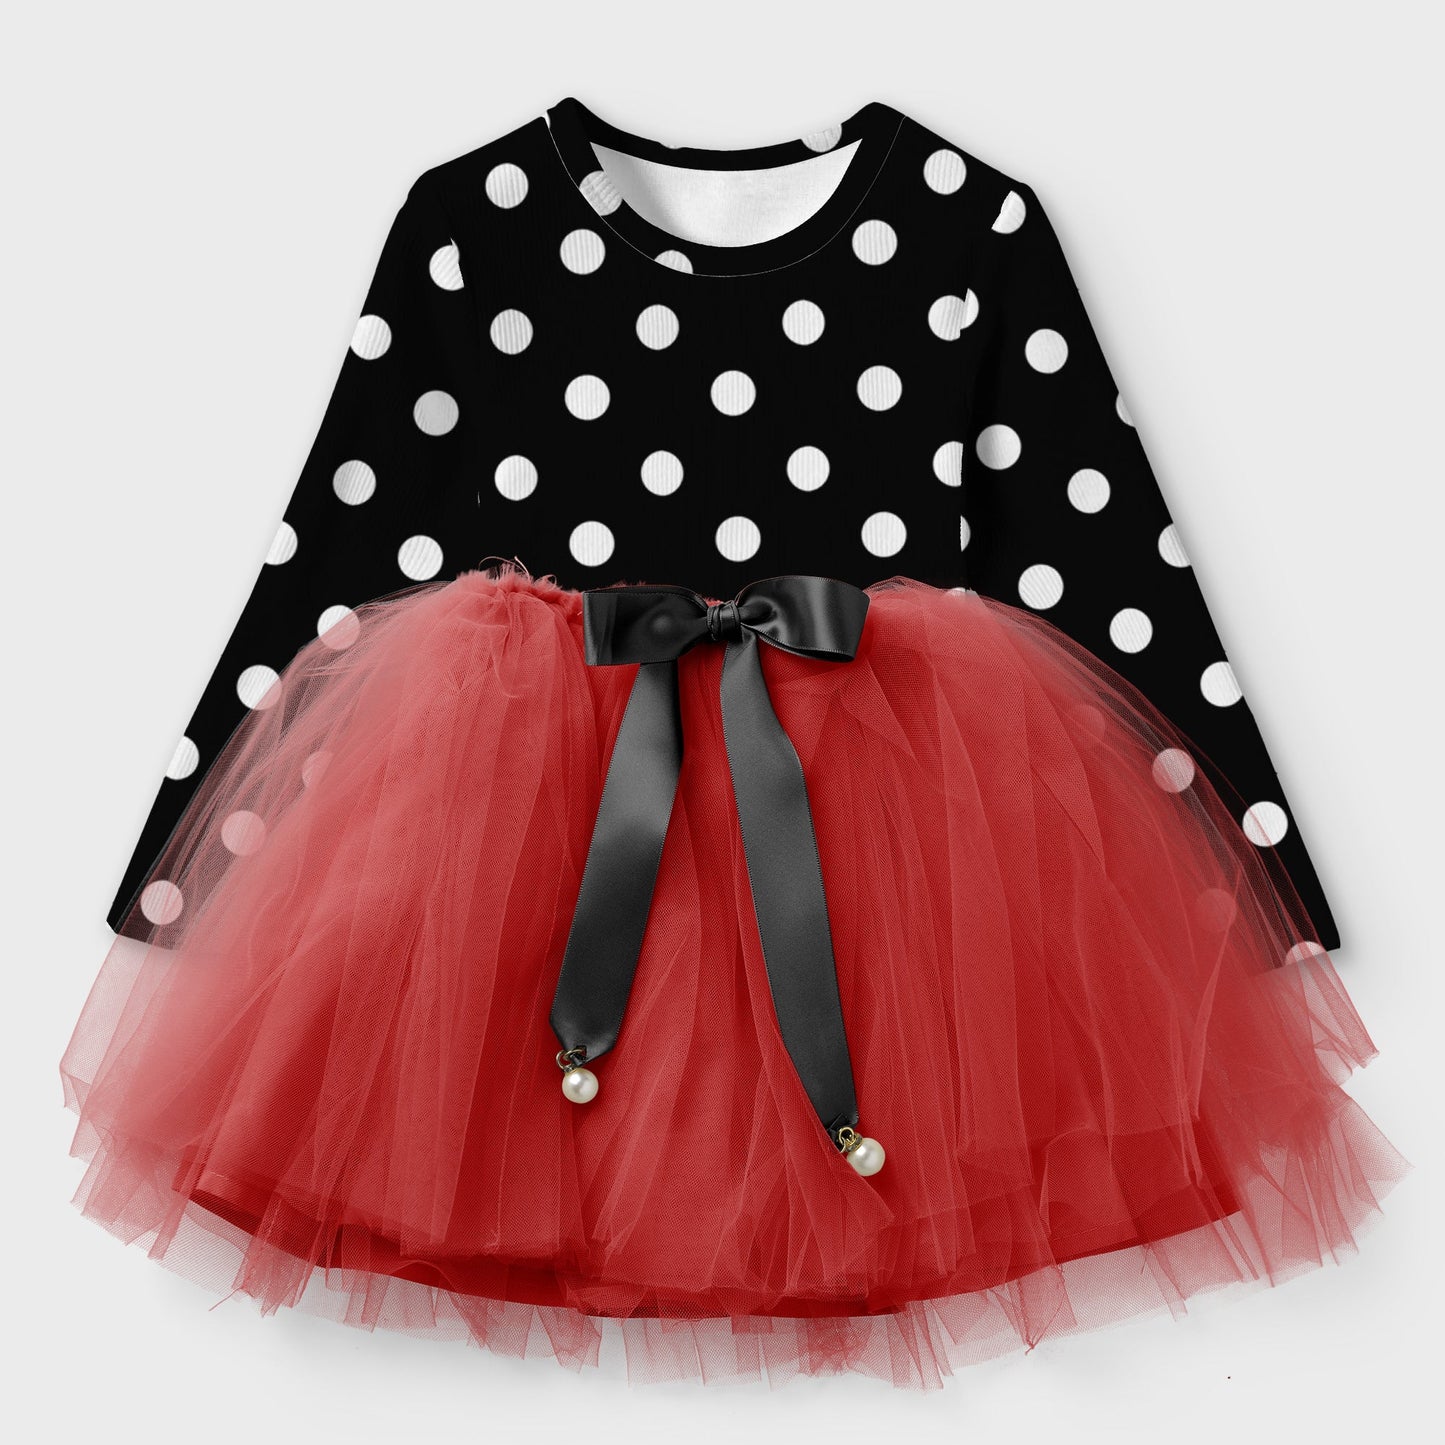 Girl & Toddler Polka Dot Net Frock Dress (Winter Stuff)